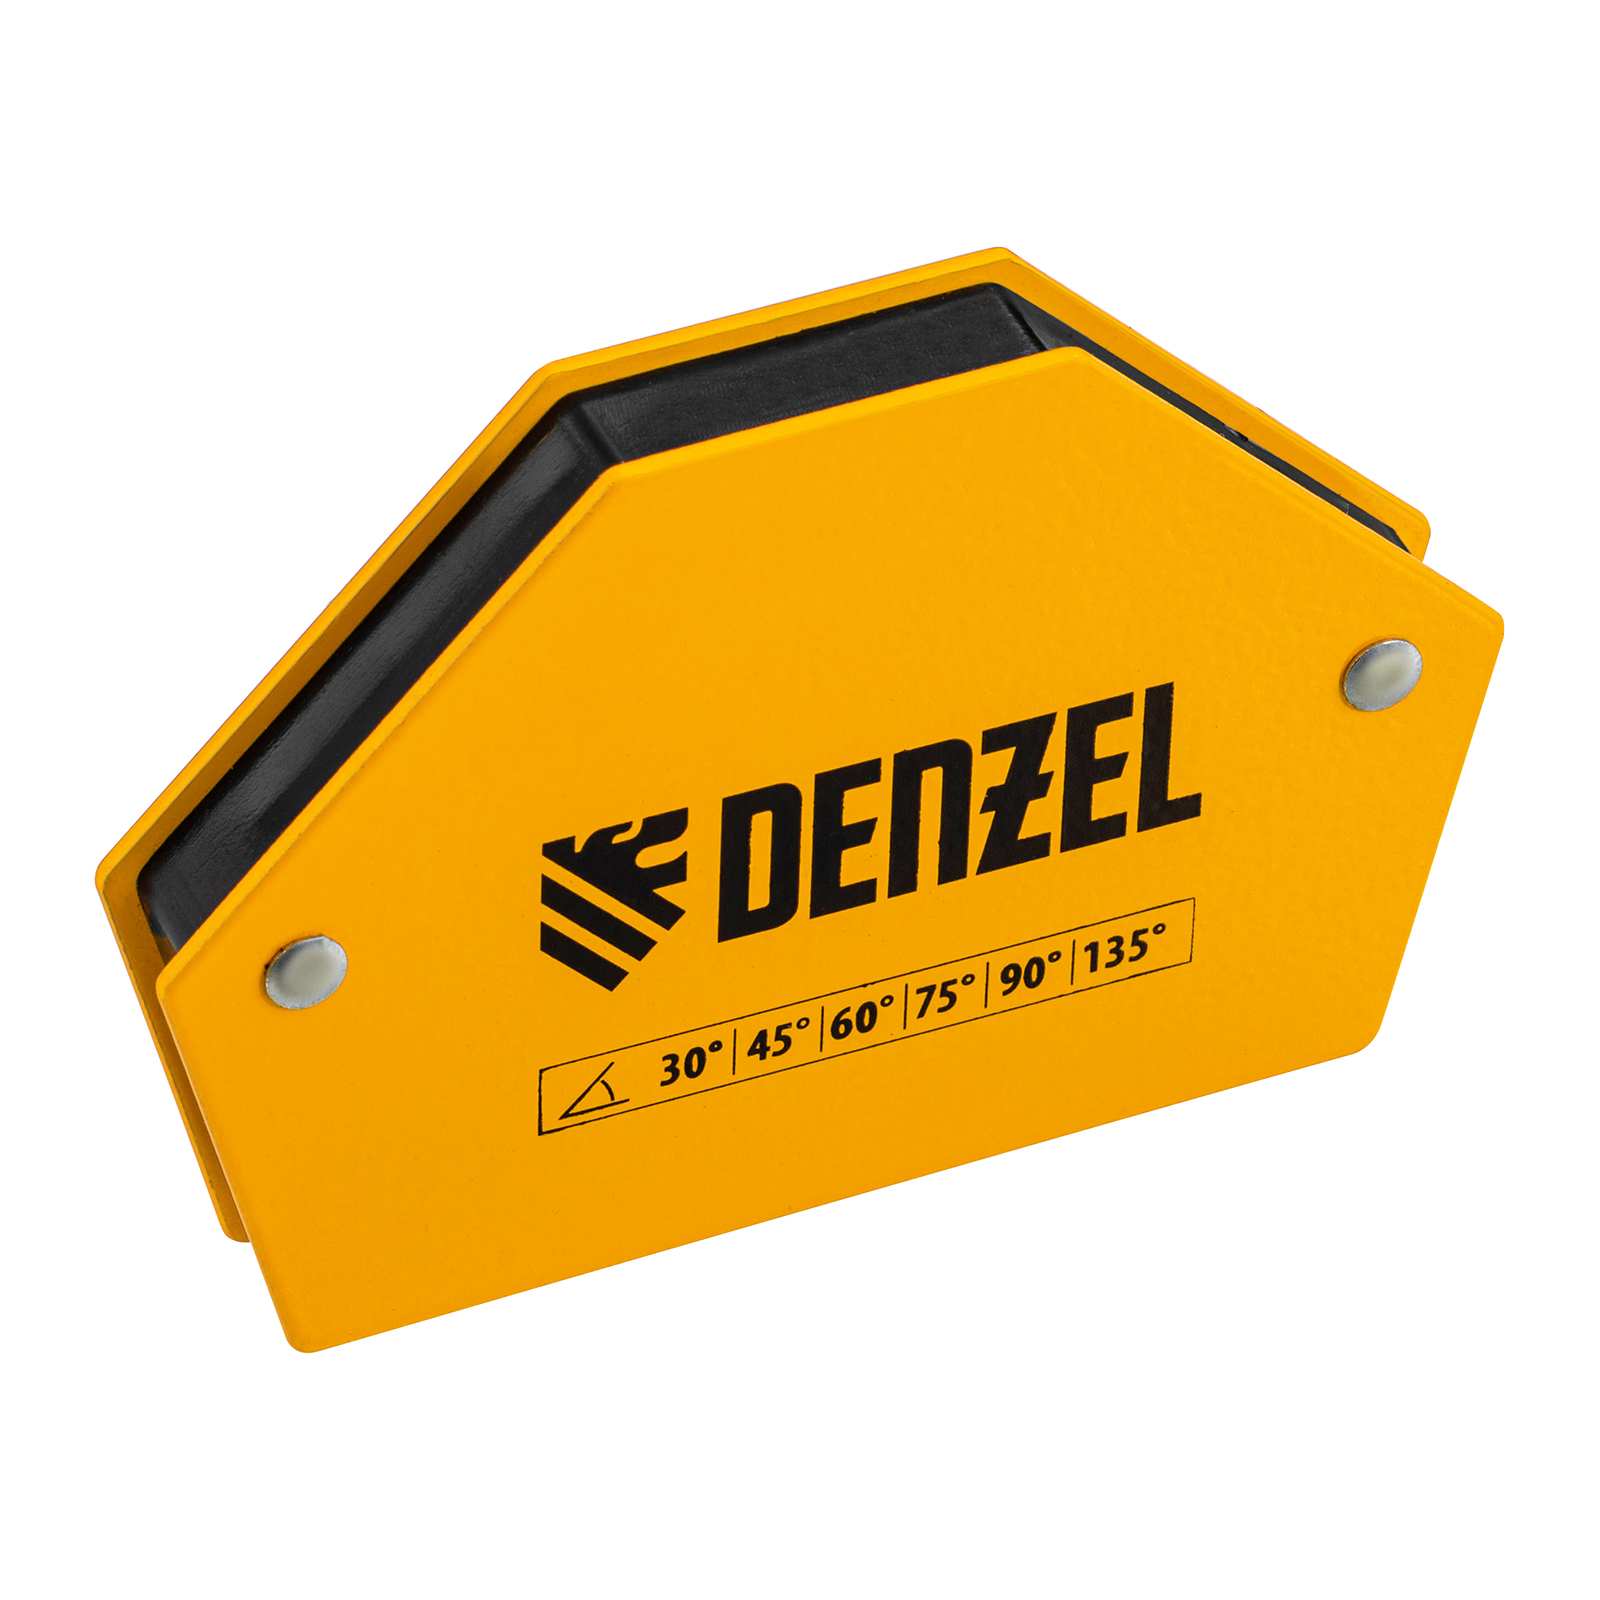 Фиксатор магнитный для сварочных работ усилие 25 LB, 30х45х60х75х90х135 град. Denzel